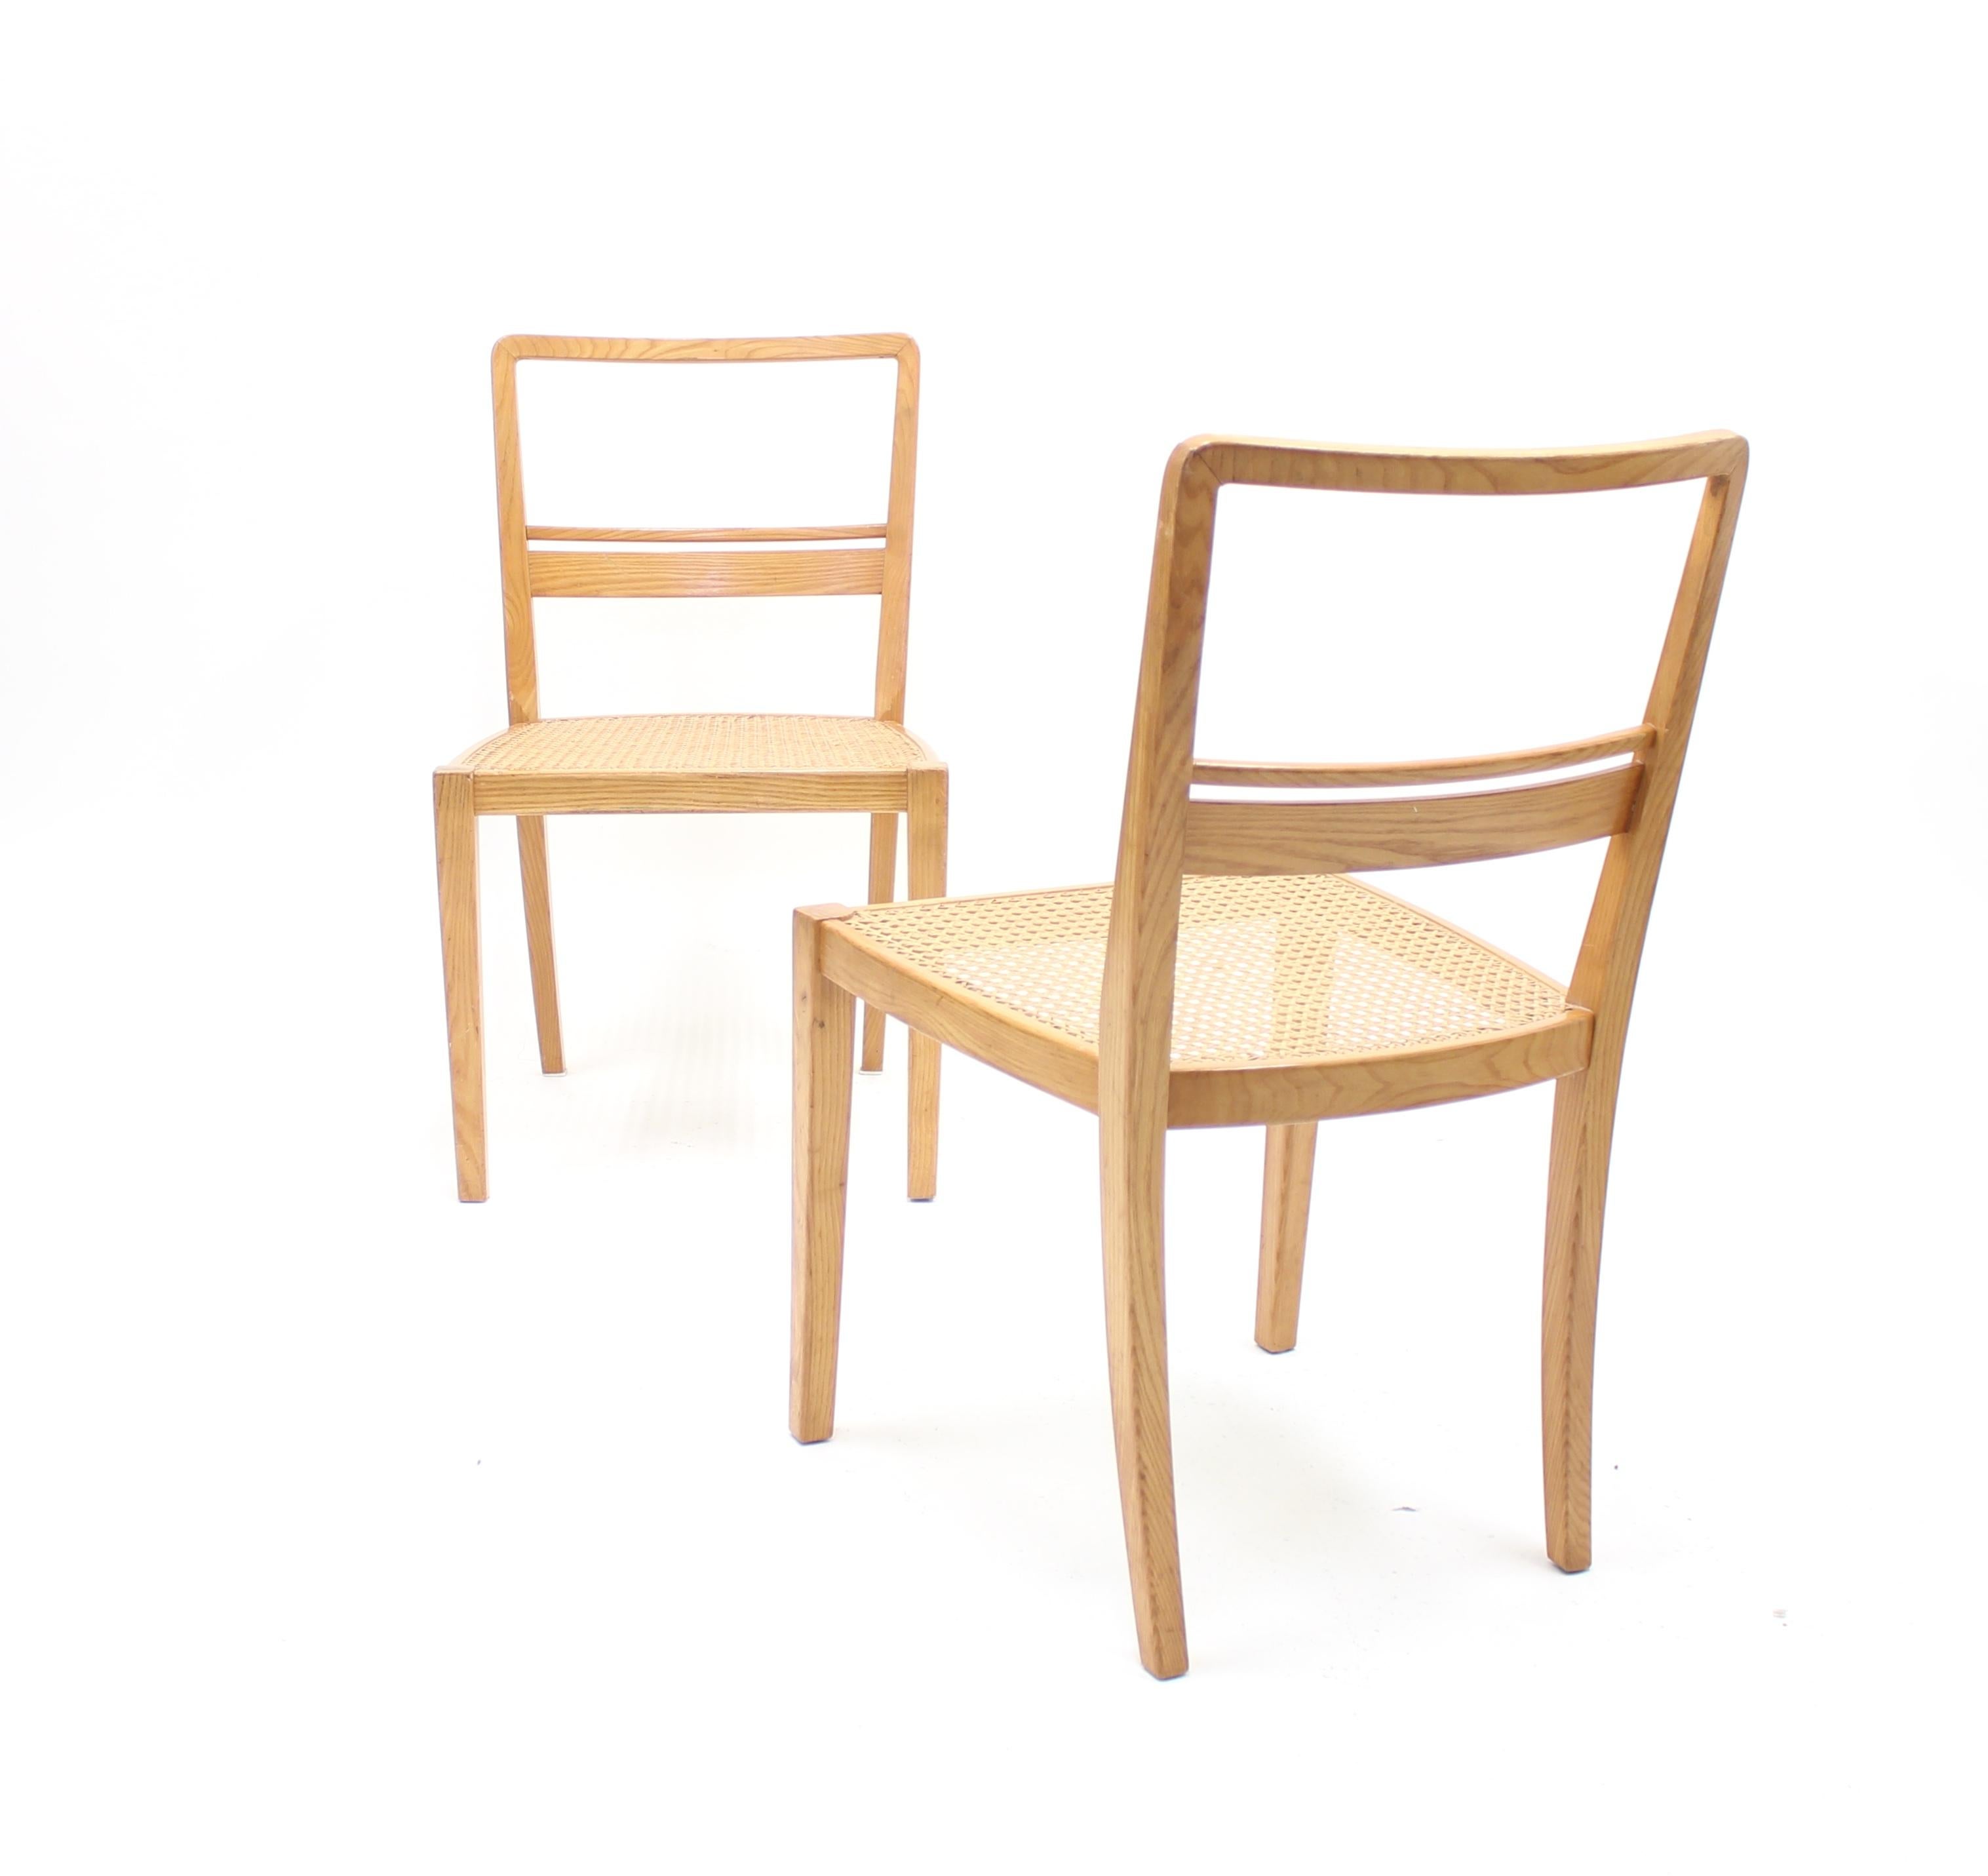 Erik Chambert, Very Rare Pair of Chairs, AB Chamberts Möbelfabrik, 1937 For Sale 2